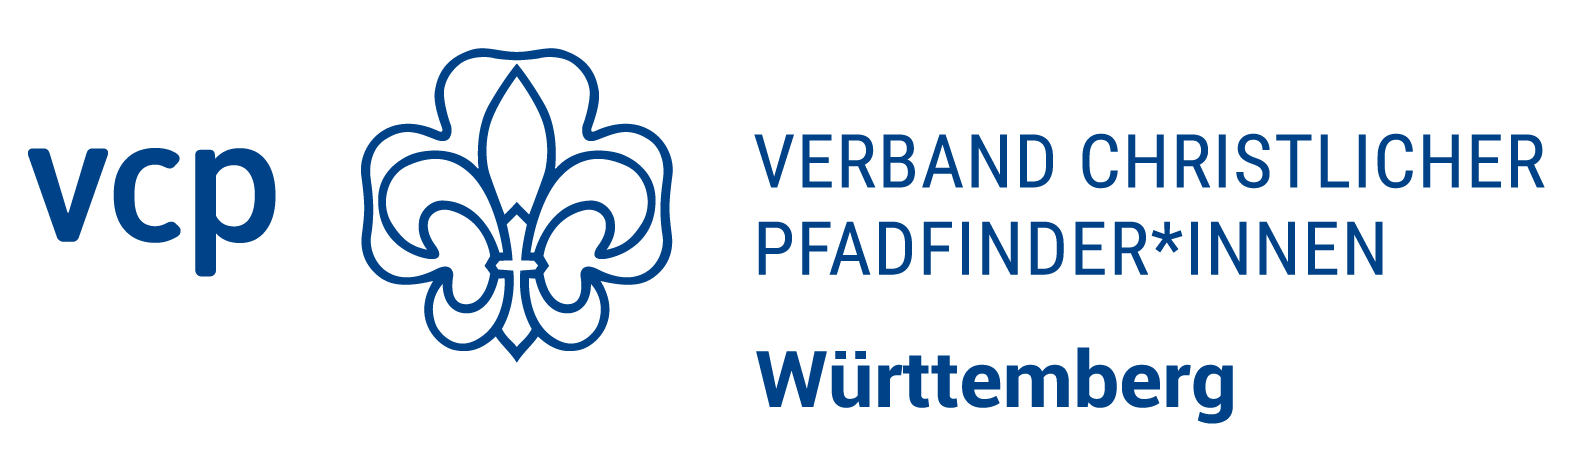 Verband Christlicher Pfadfinder*innen Württemberg e. V. - VCP Württemberg